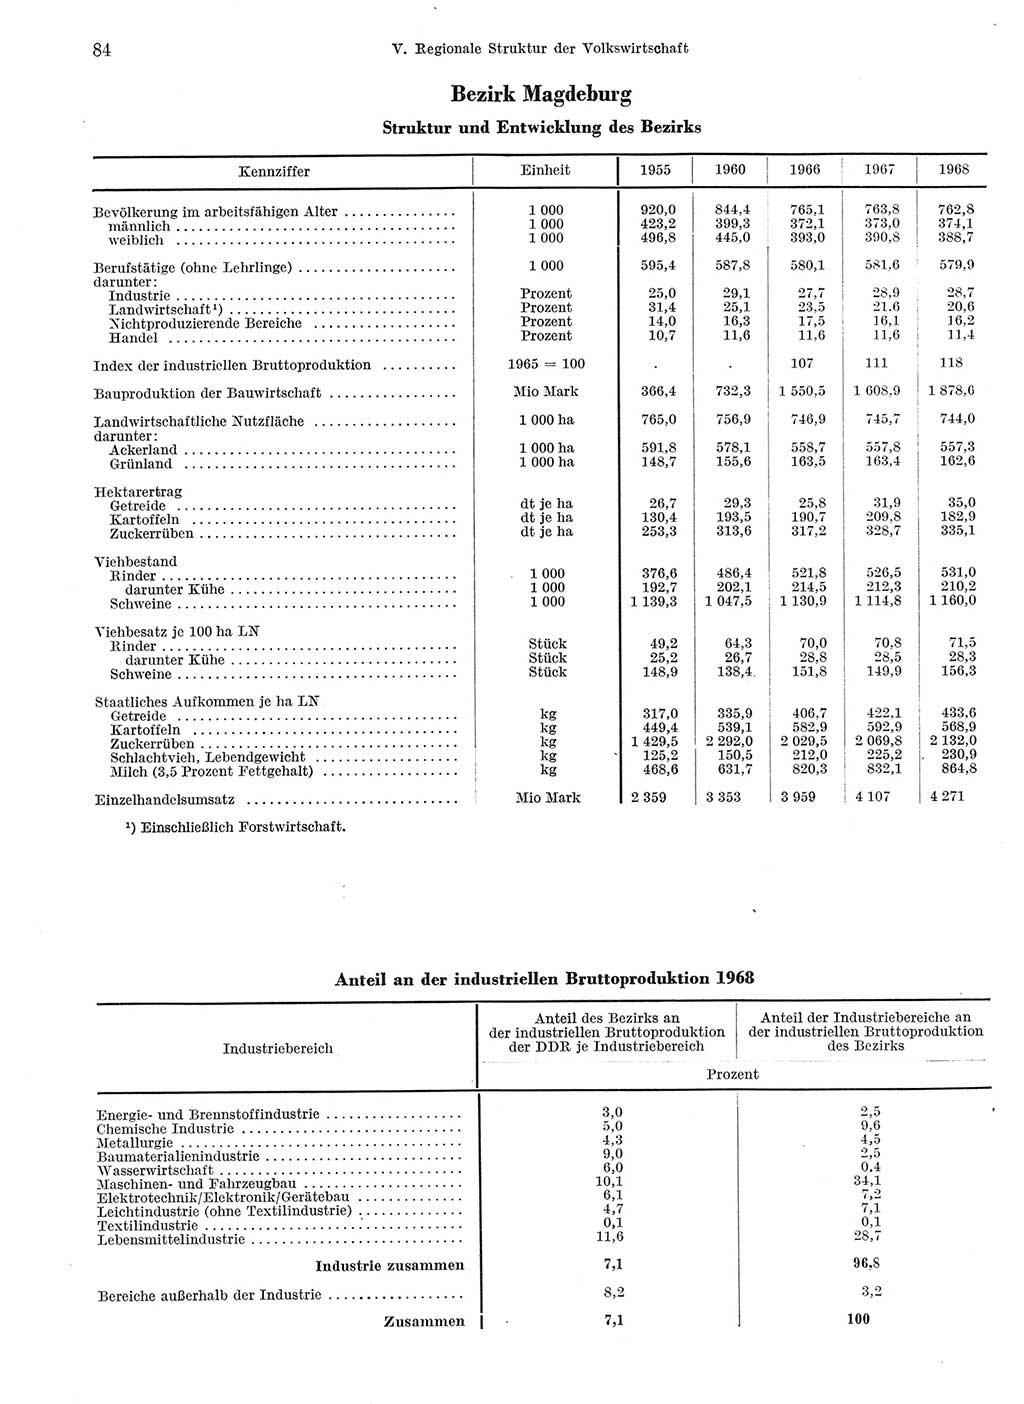 Statistisches Jahrbuch der Deutschen Demokratischen Republik (DDR) 1969, Seite 84 (Stat. Jb. DDR 1969, S. 84)